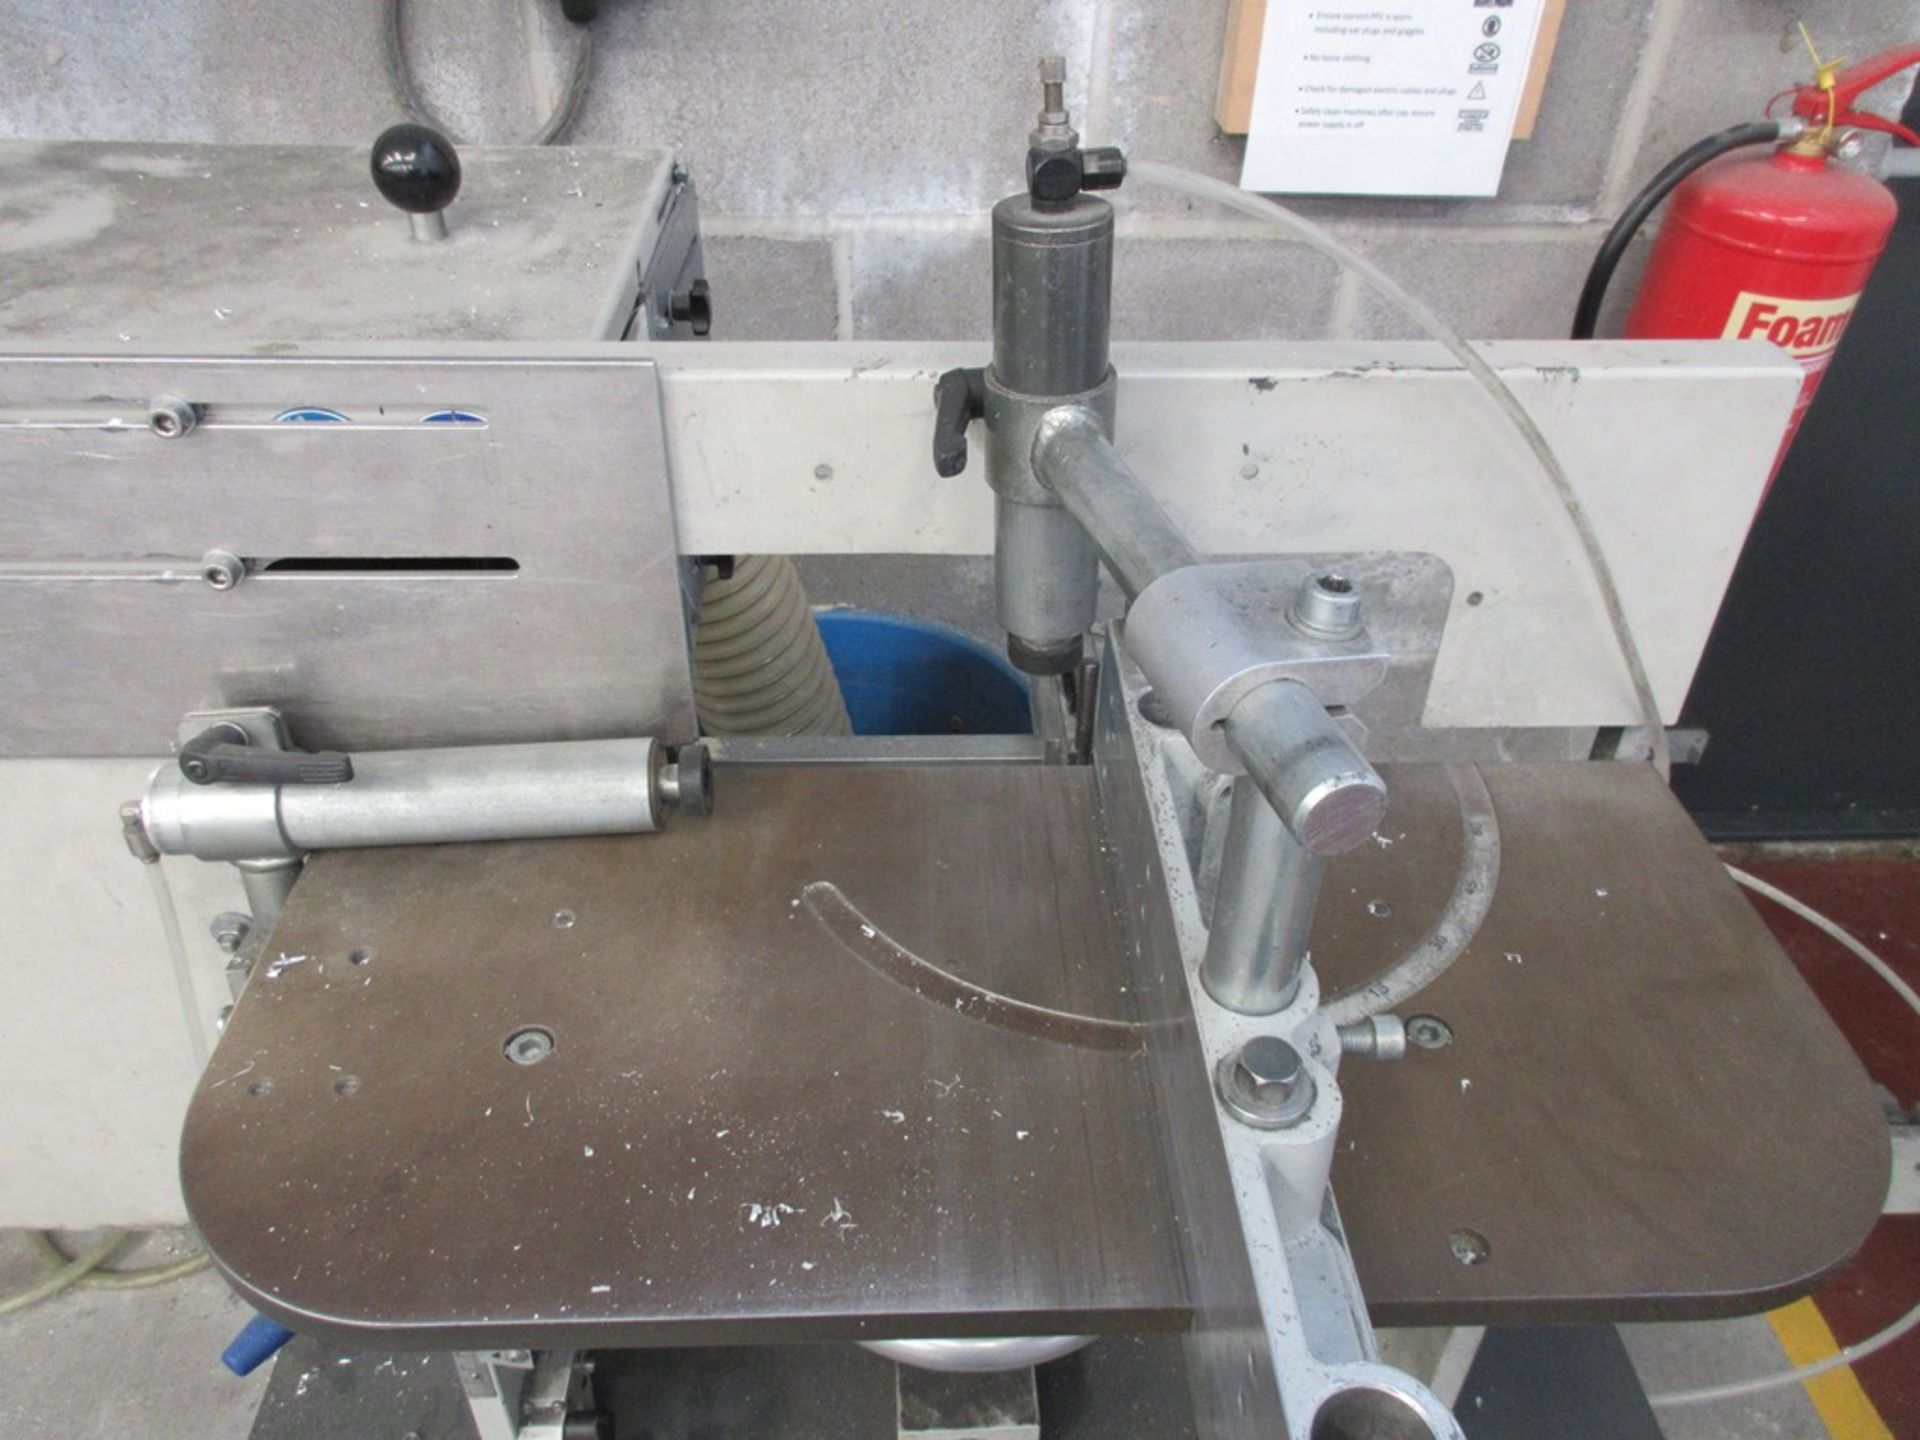 Elumatec AF222/00 End milling machine (2005) - Image 3 of 6